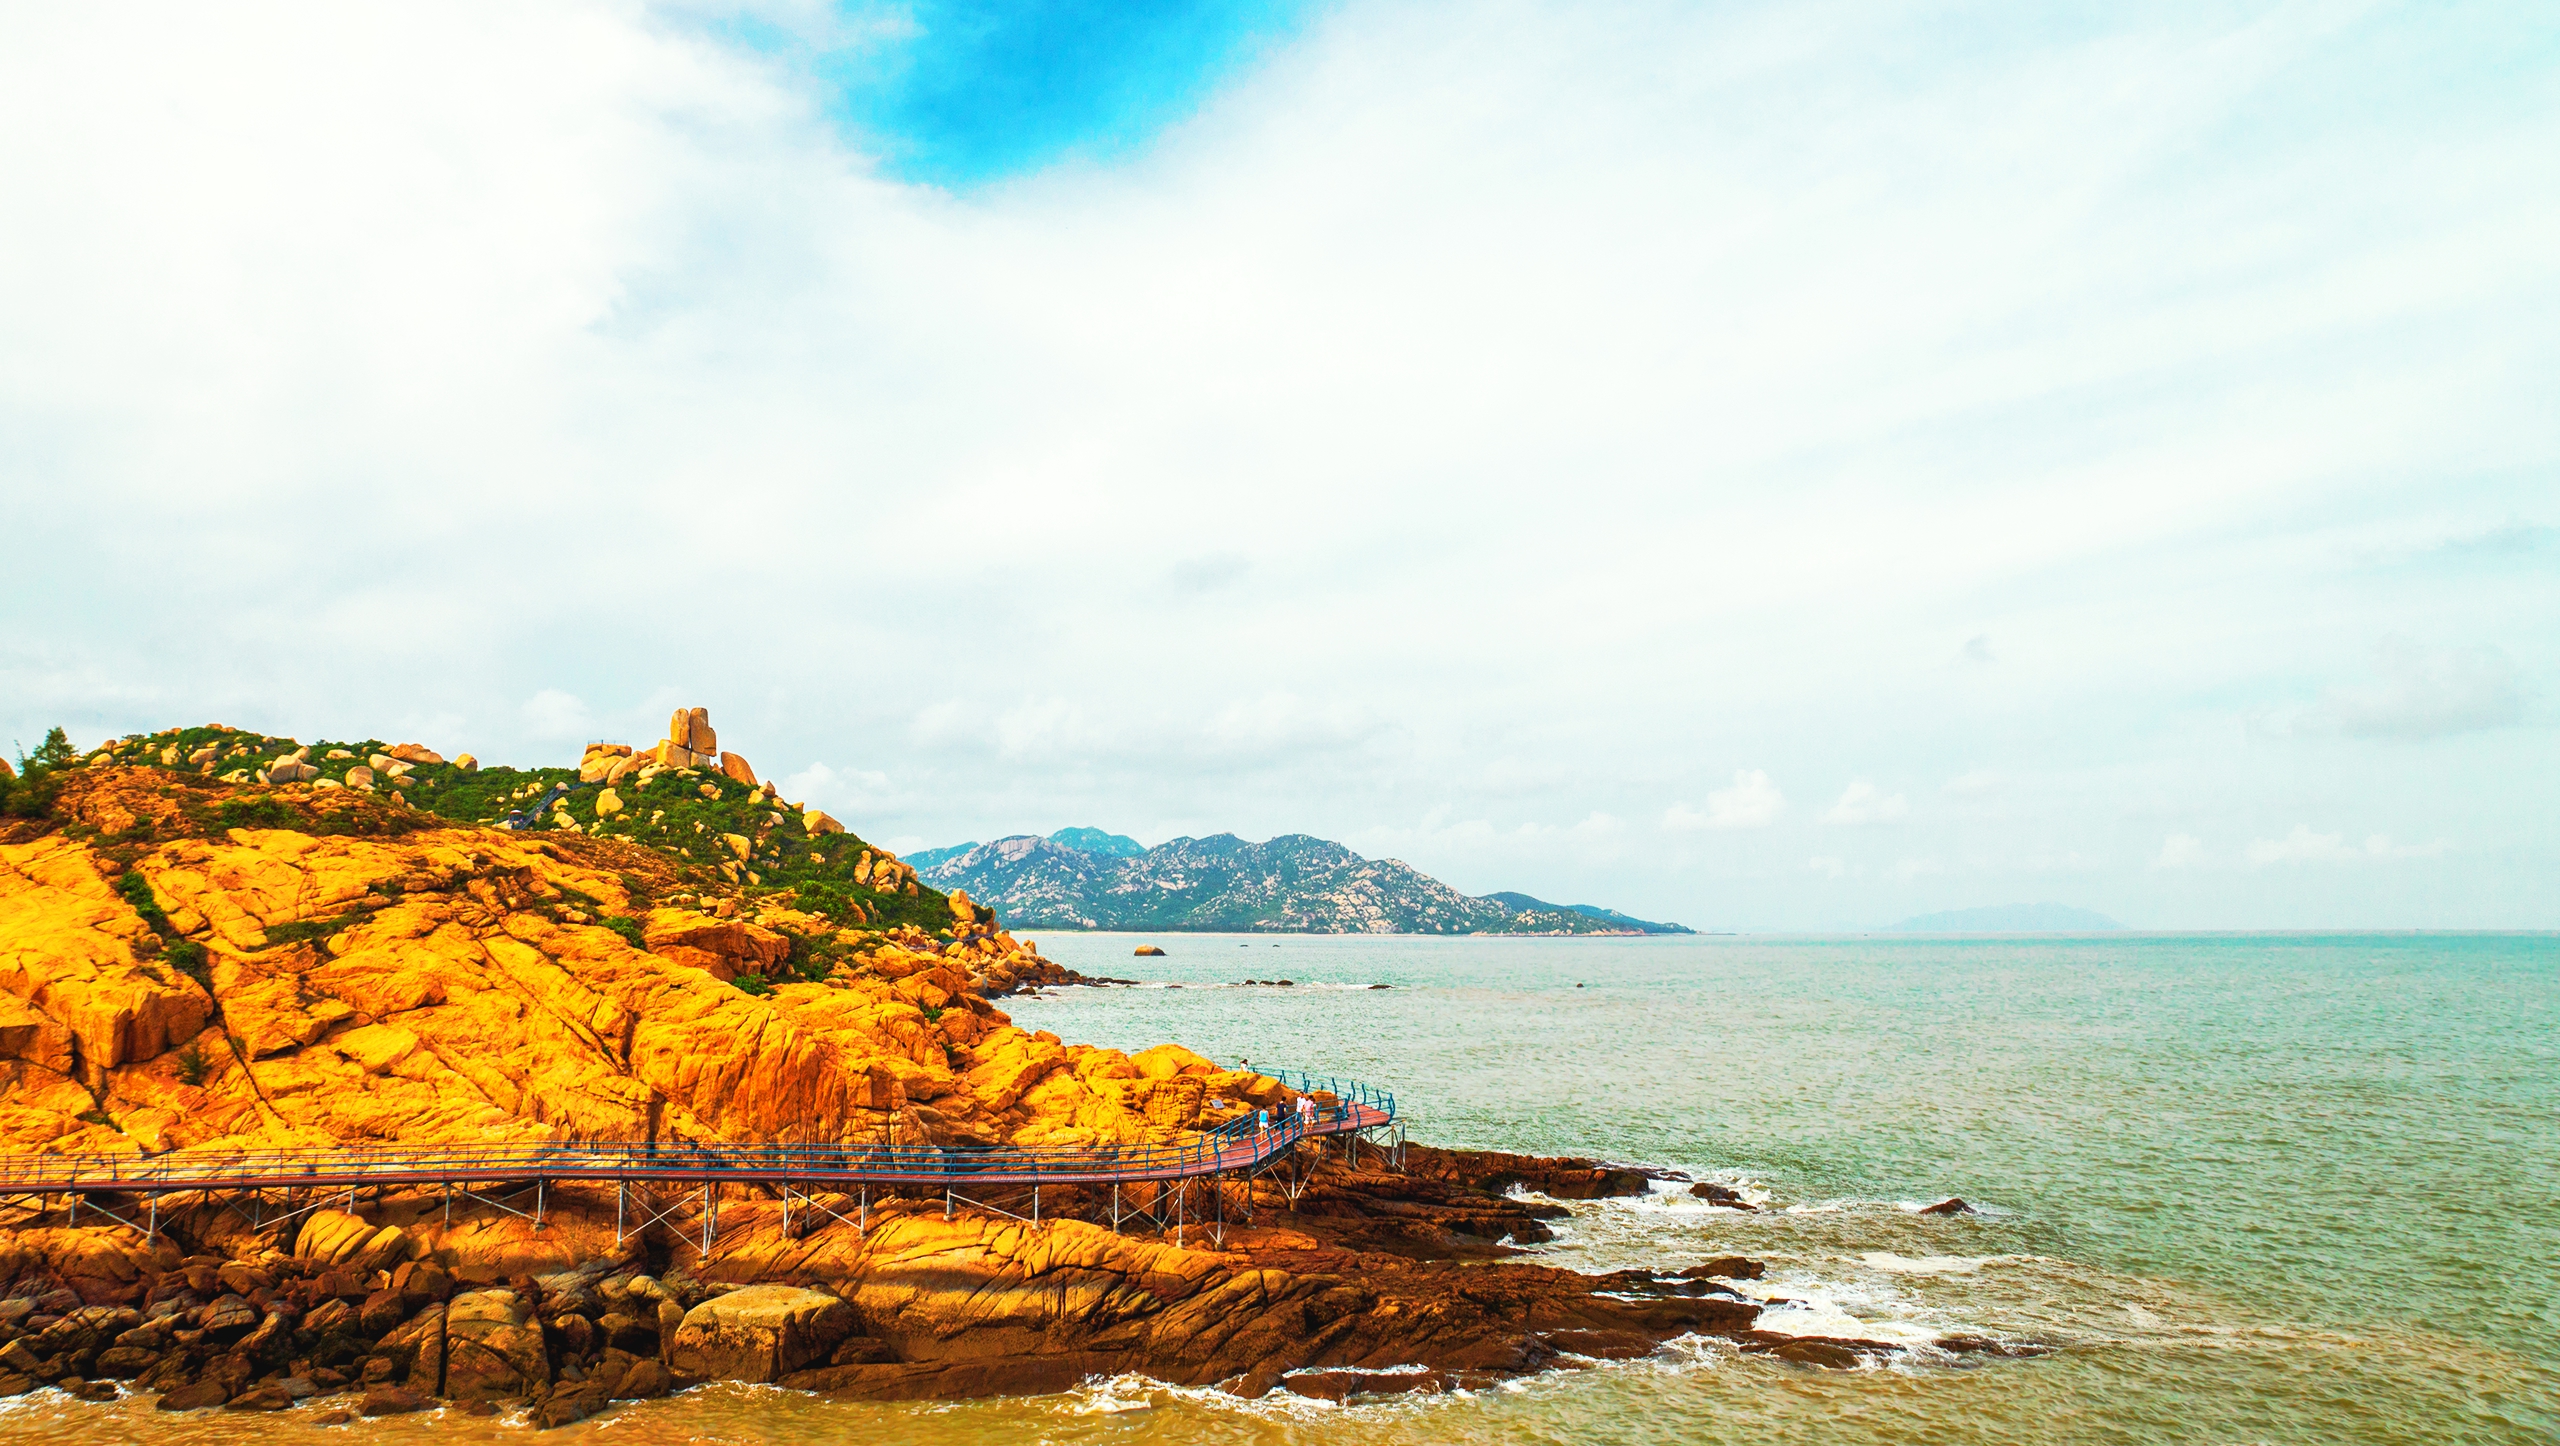 又一新岛向游客开放沙扒镇青州岛海滨度假体验不一样的浪漫一夏